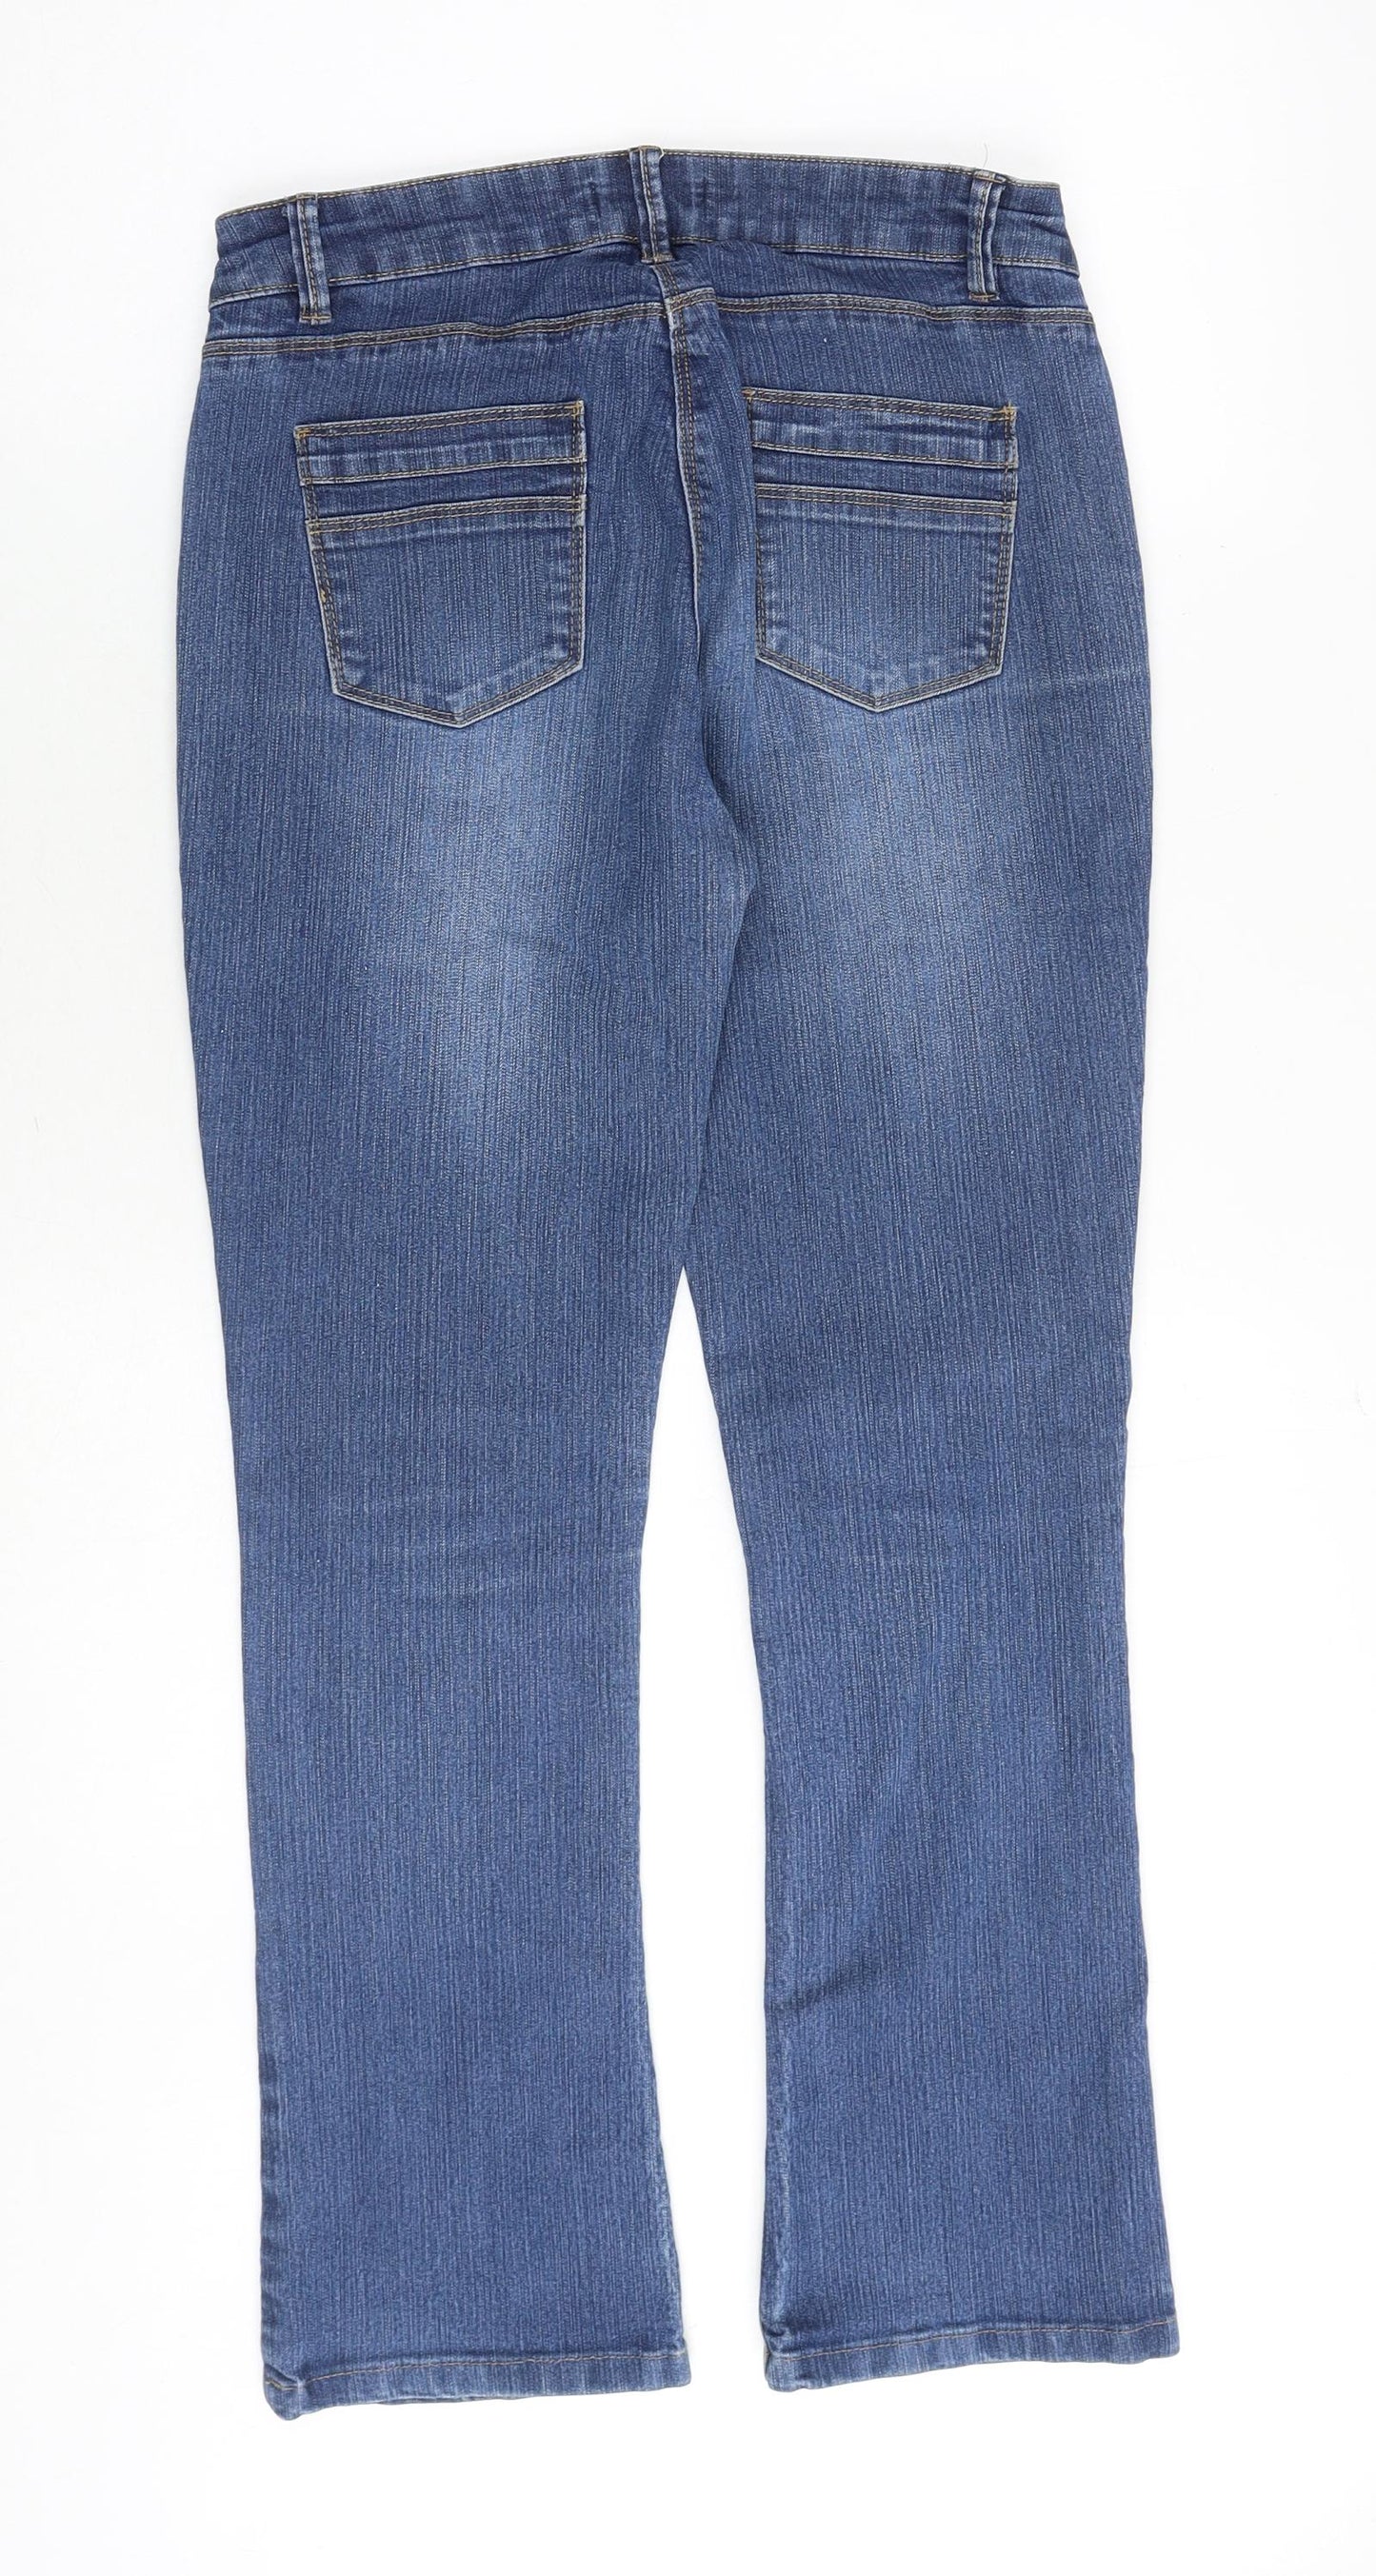 Harrogate Womens Blue Cotton Bootcut Jeans Size 10 Regular Zip